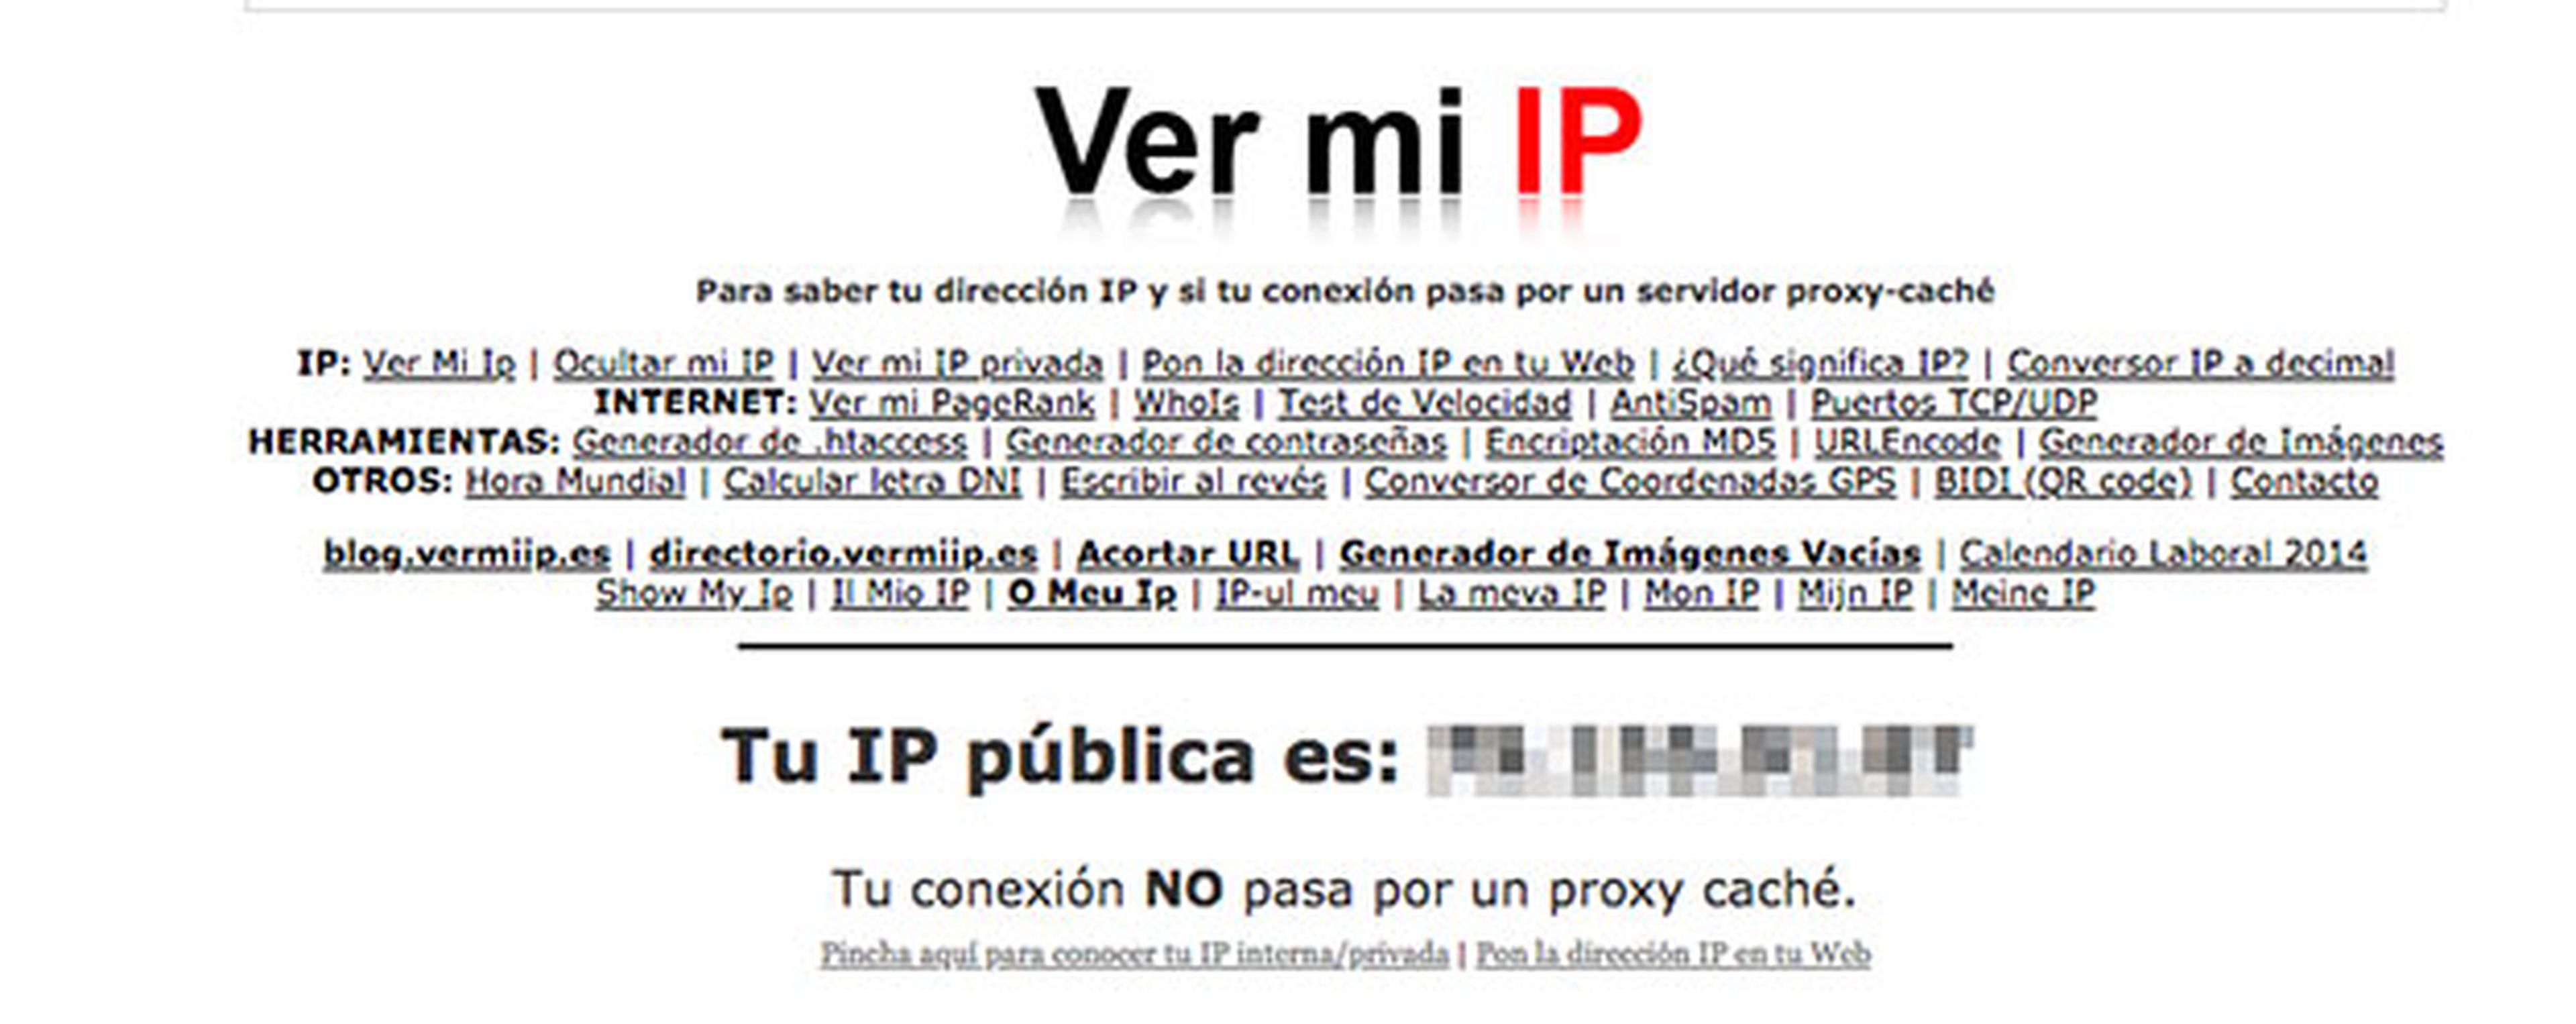 Ver mi IP